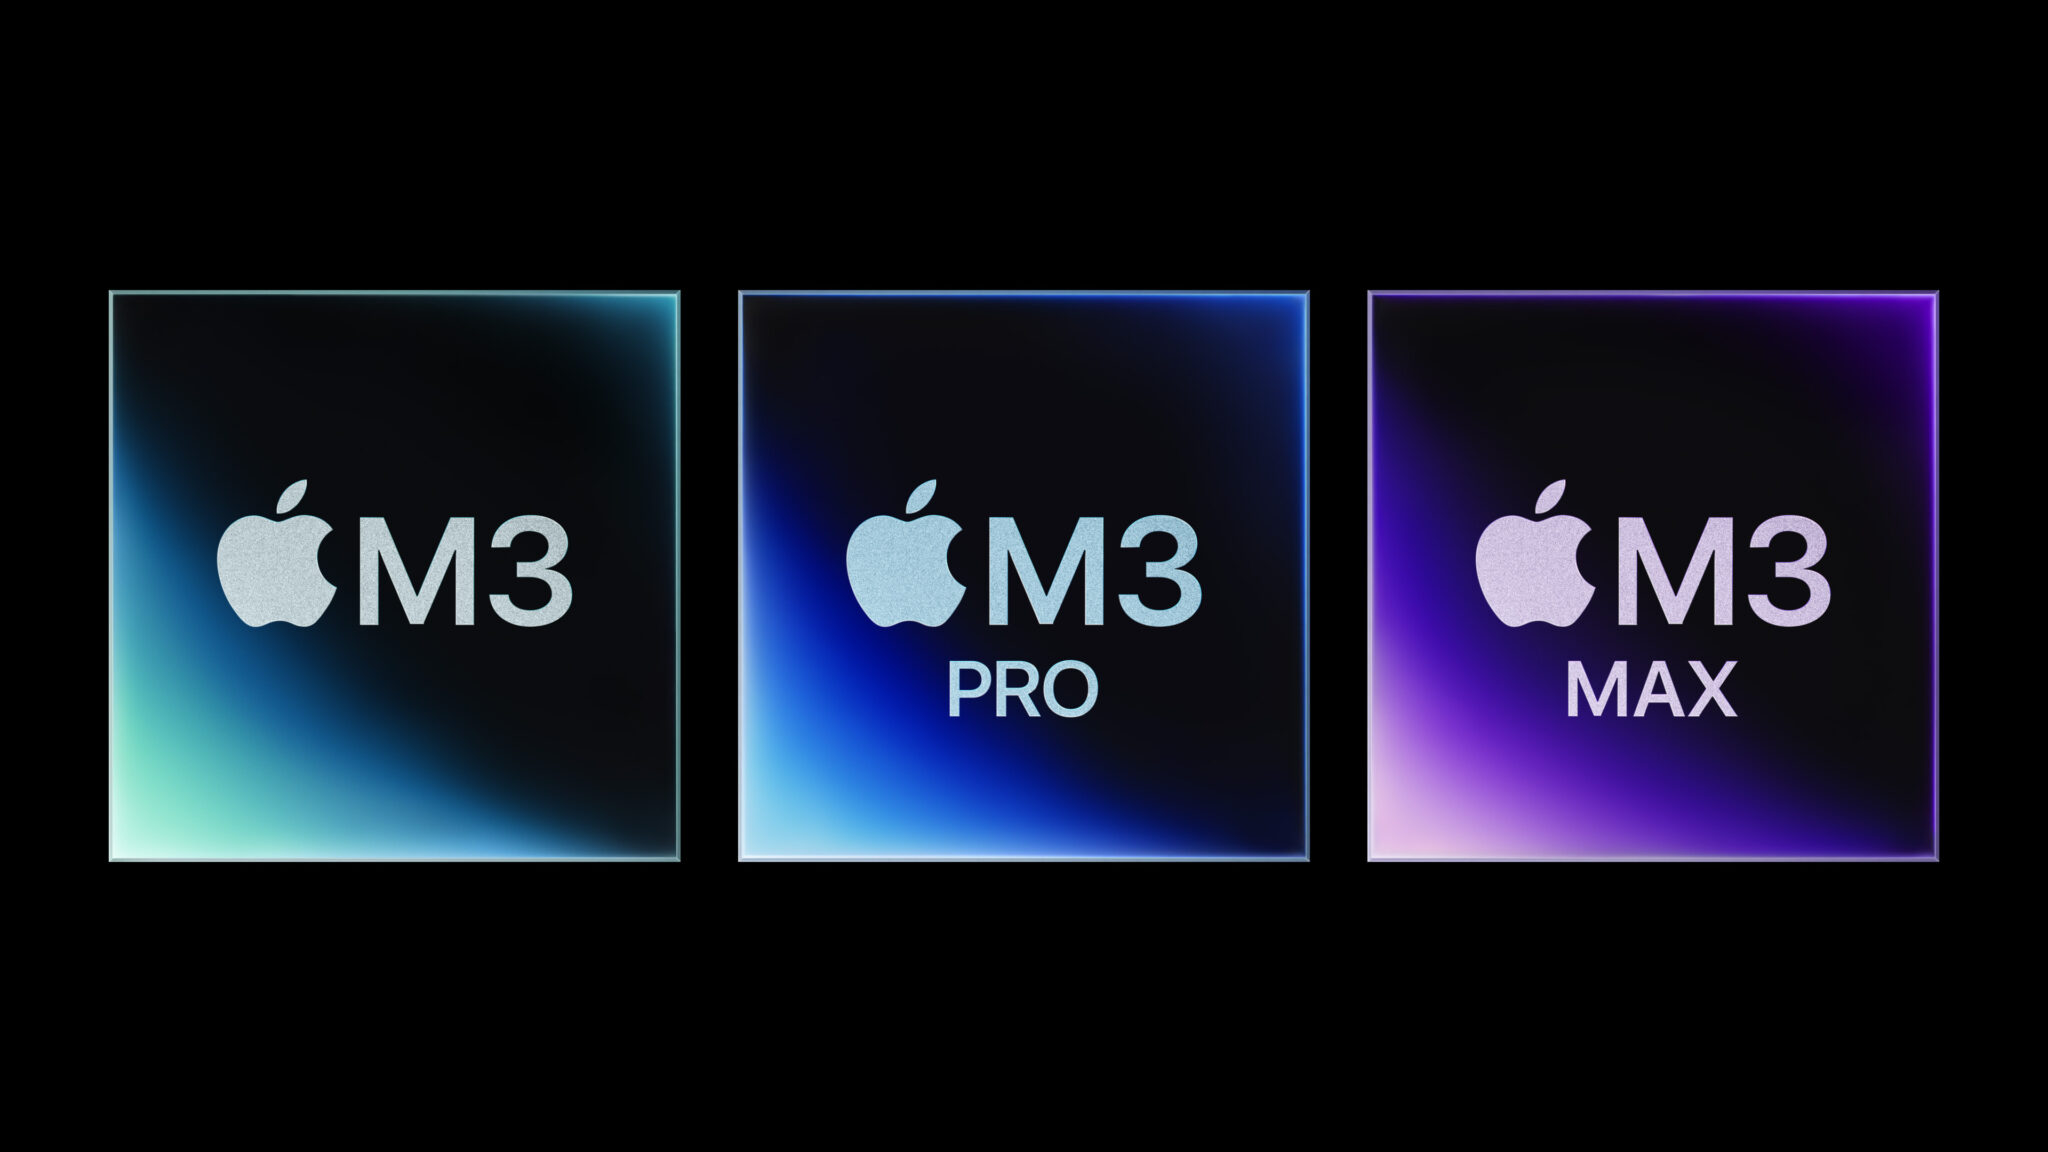 Apple stellt die neuen M3-Chips vor